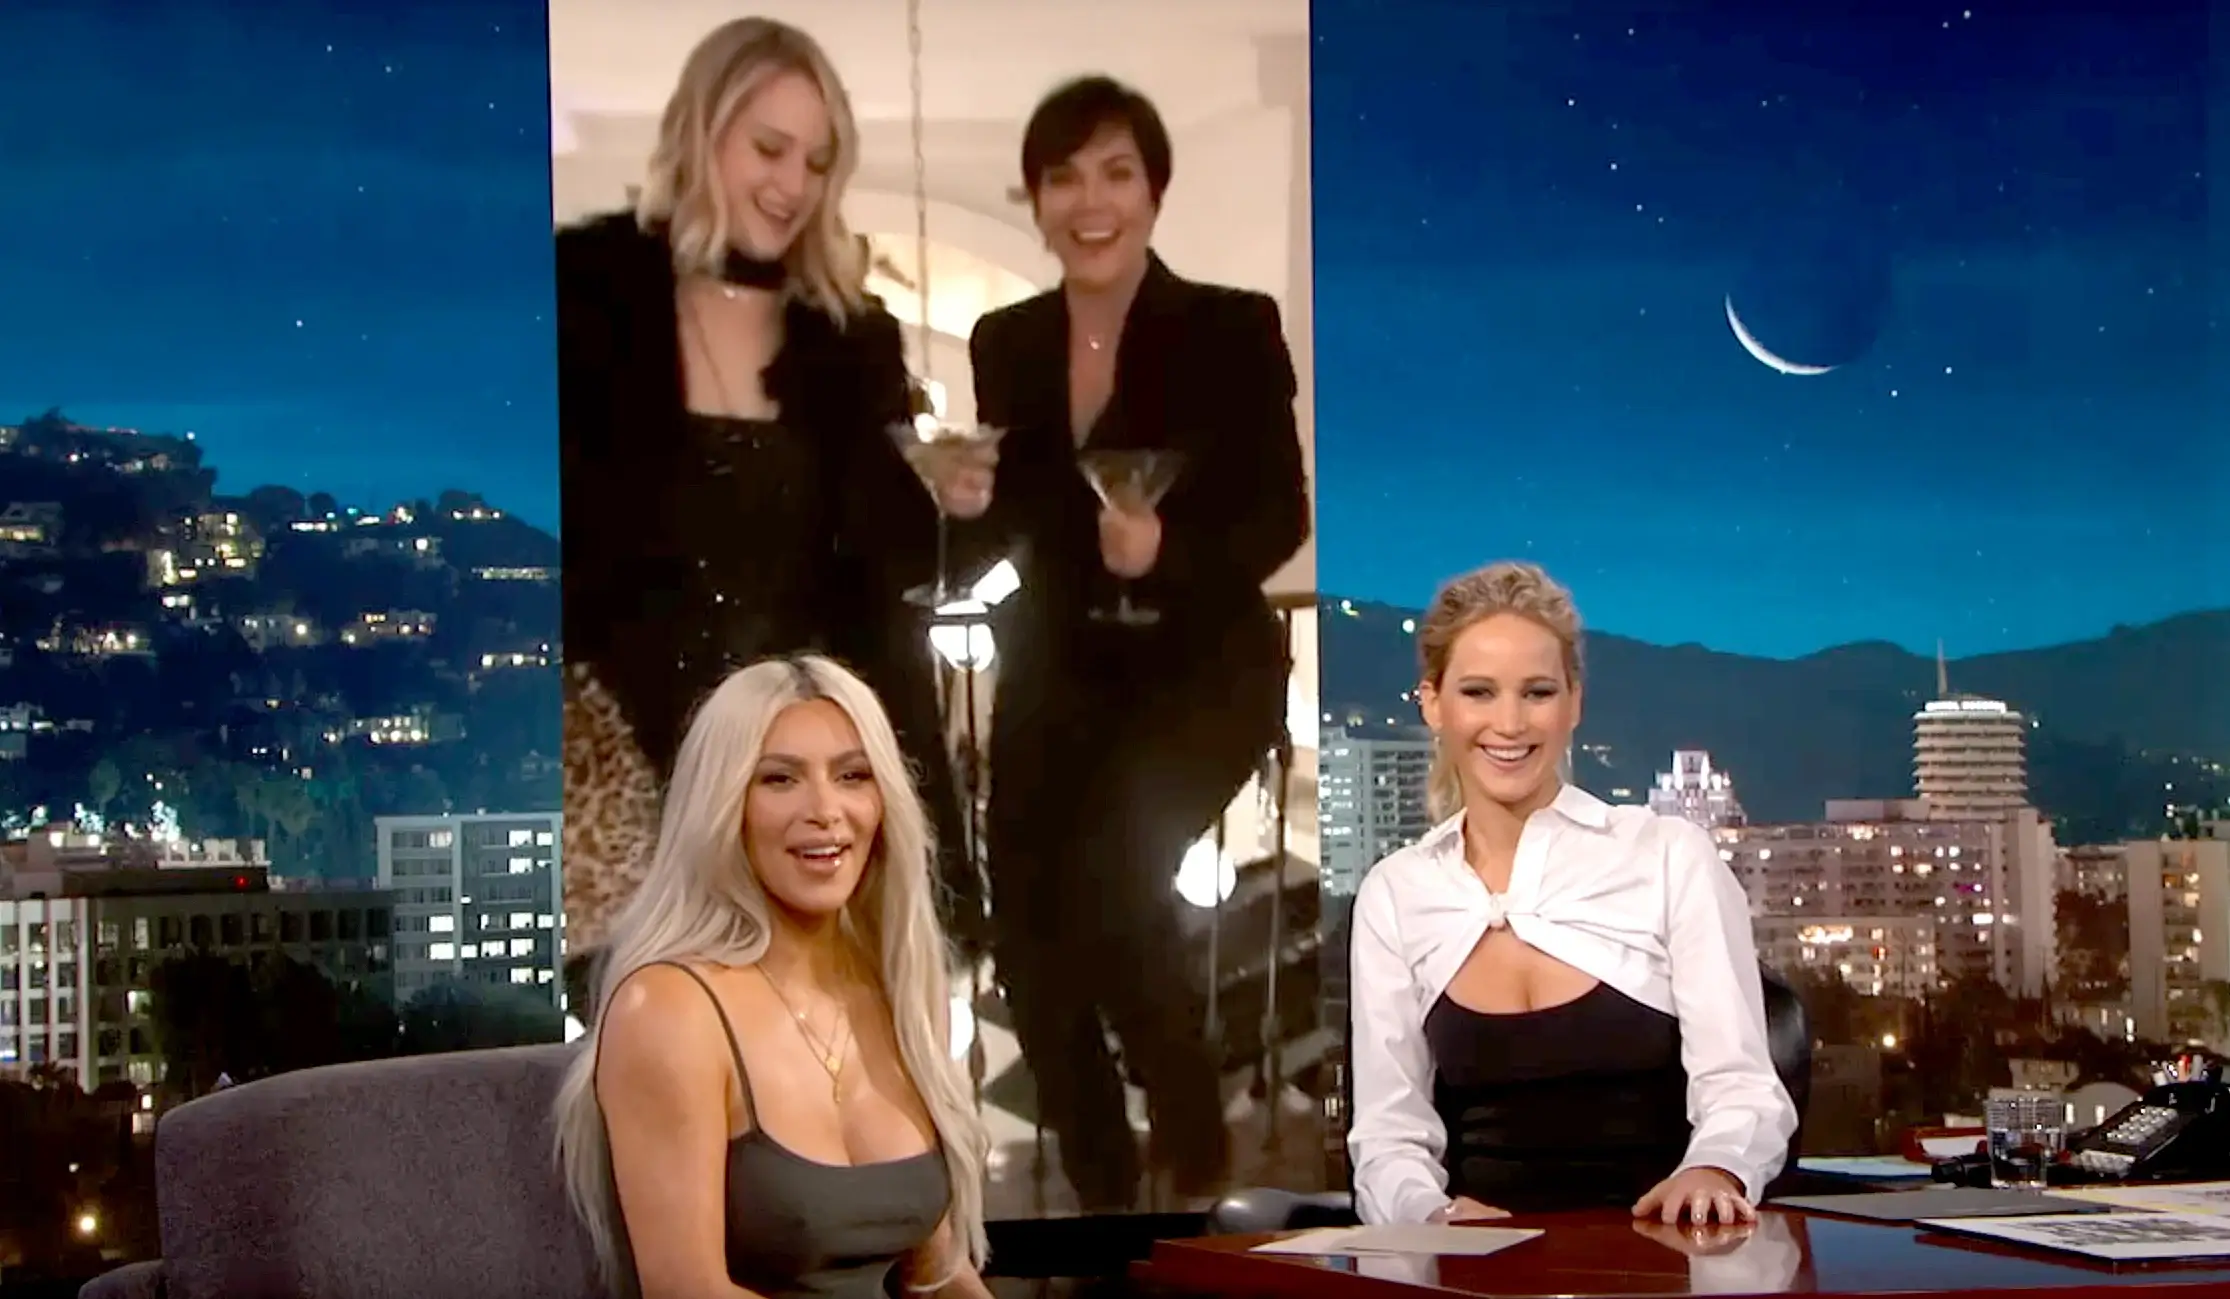 Kim Kardashian and Jennifer Lawrence watching a video